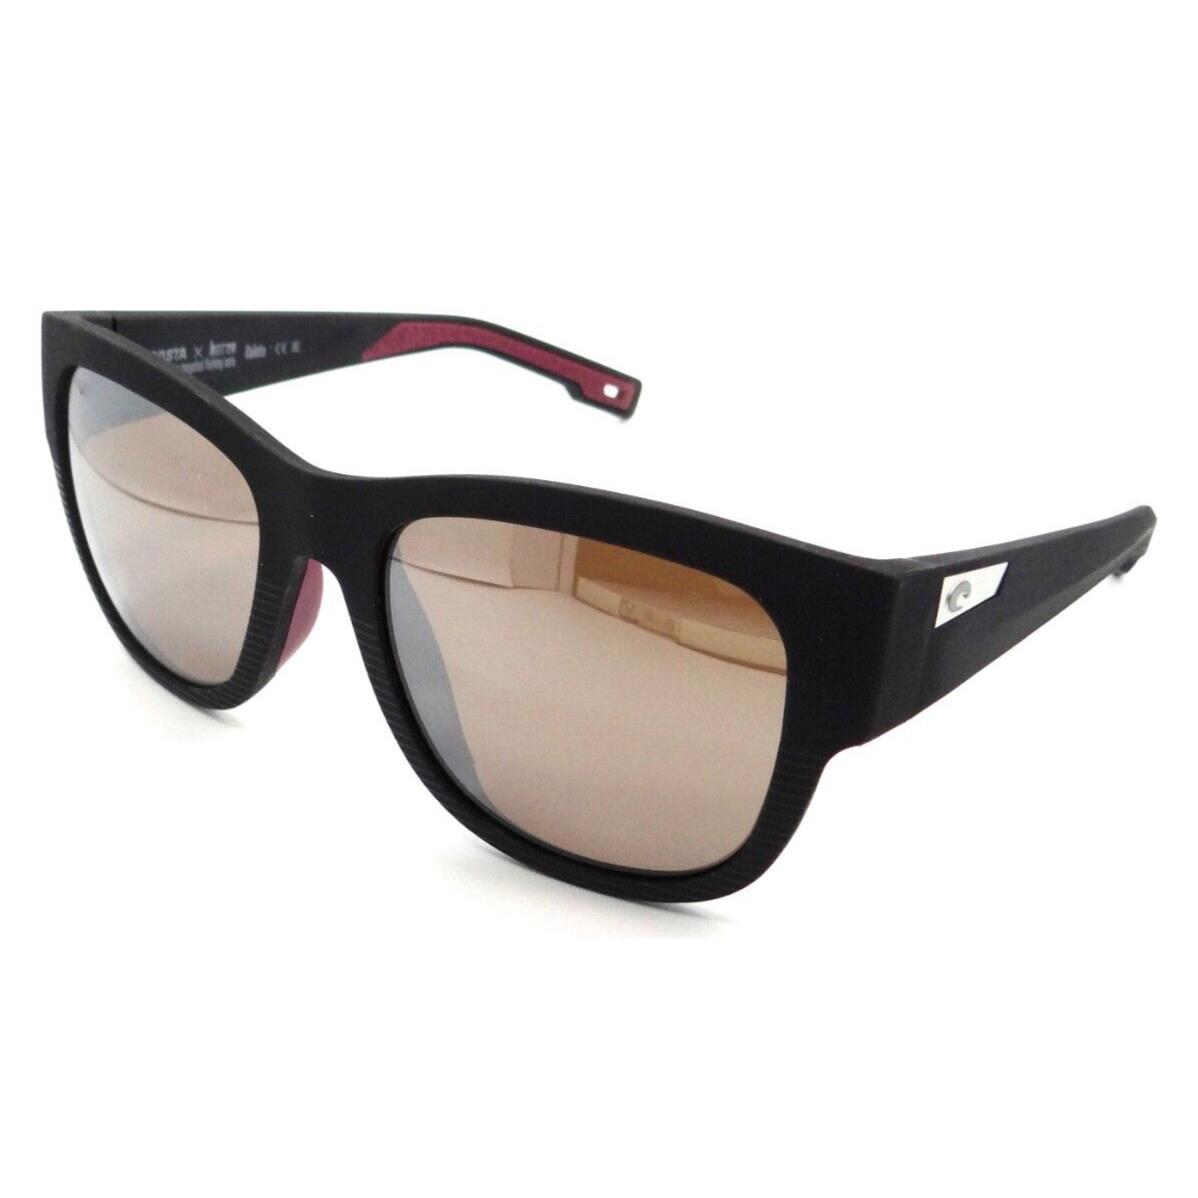 Costa Del Mar Sunglasses Caleta 55-19-139 Net Black / Silver Mirror 580G Glass - Frame: